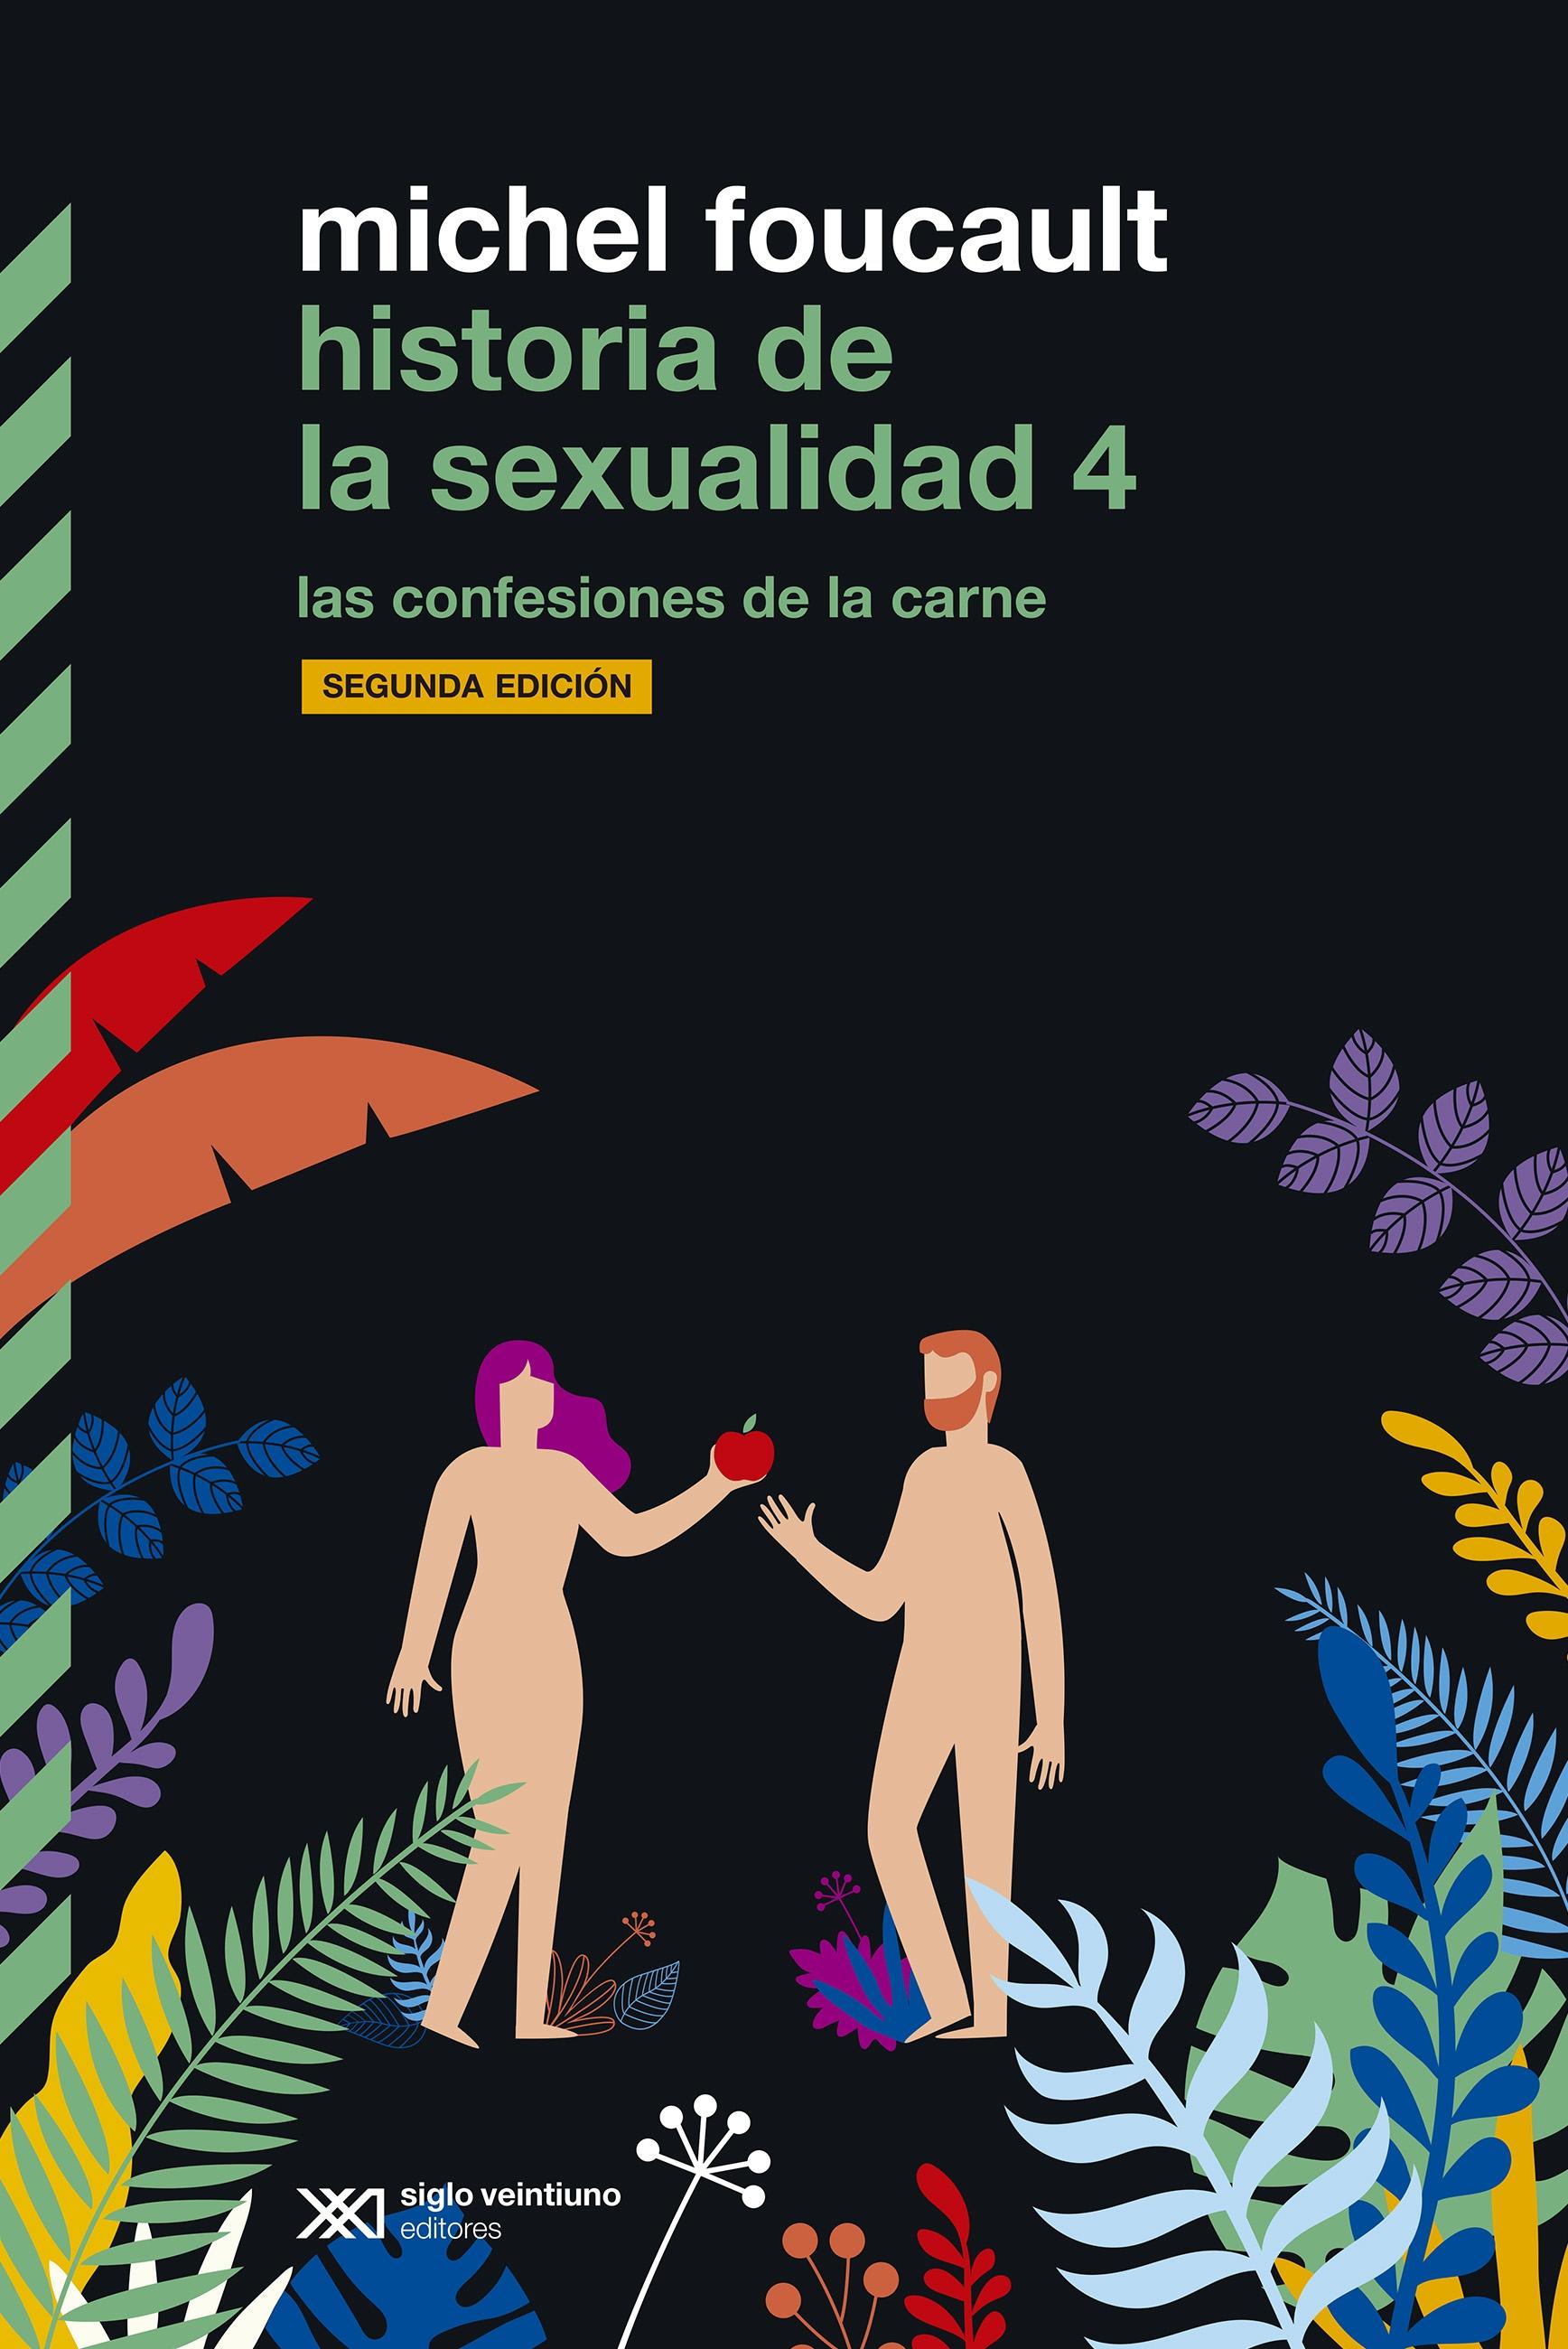 HISTORIA DE LA SEXUALIDAD 4 "LAS CONFESIONES DE LA CARNE"